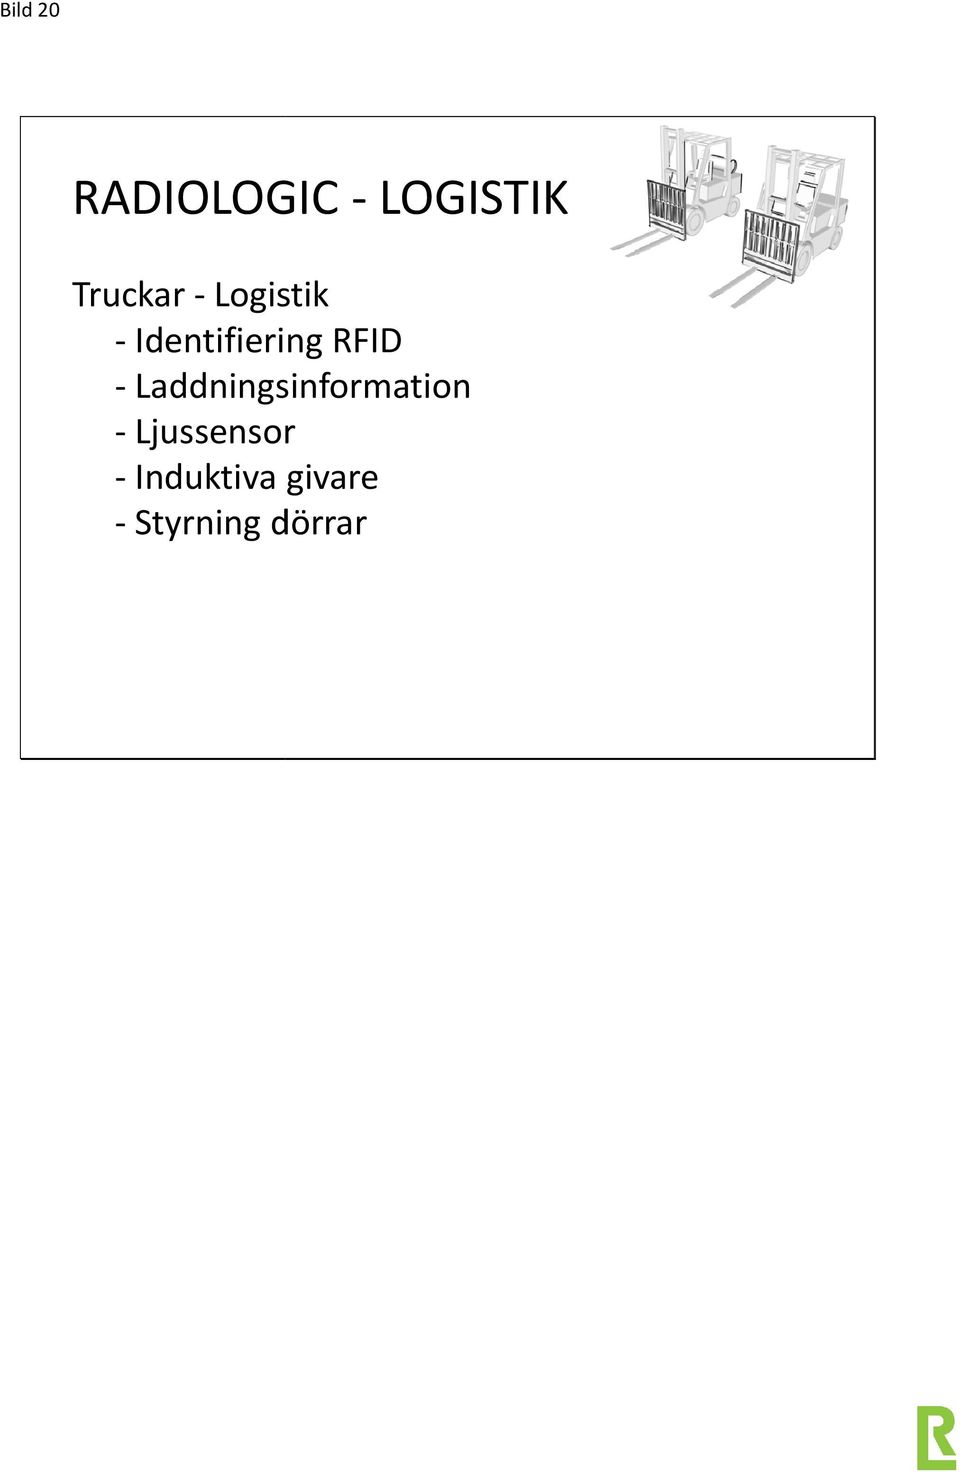 RFID - Laddningsinformation -